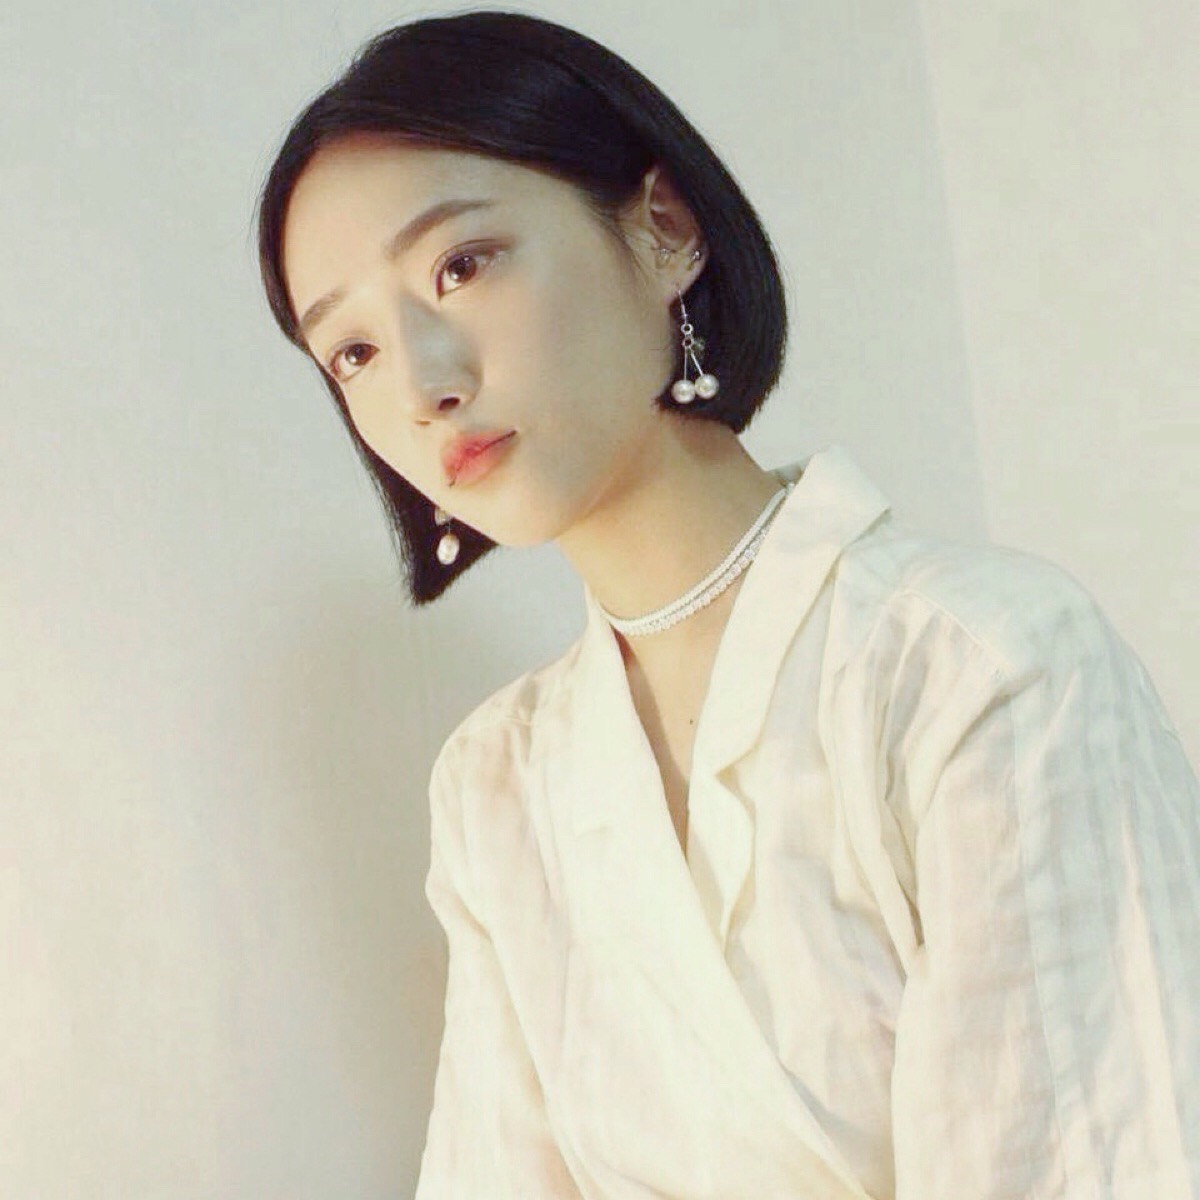 已调色 韩系 女生 欧美 半身 唯美 遮脸 镜子照 中式风 安静 可爱